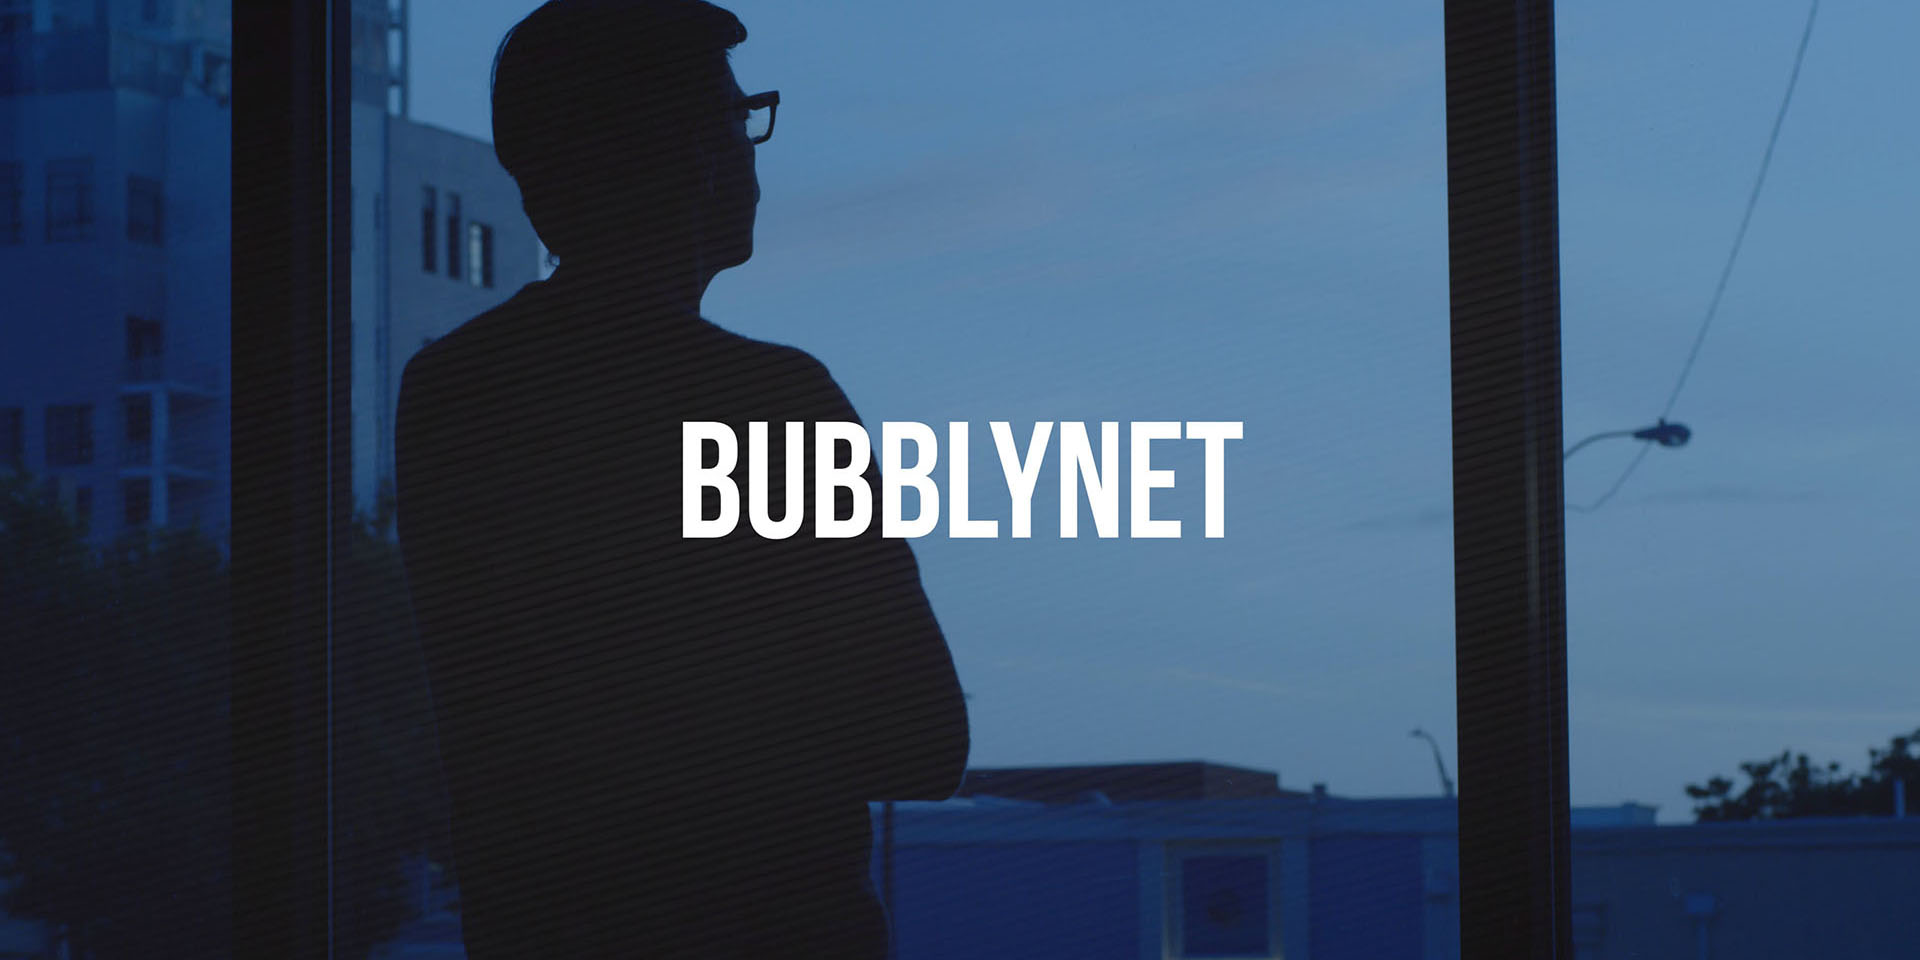 BubblyNet